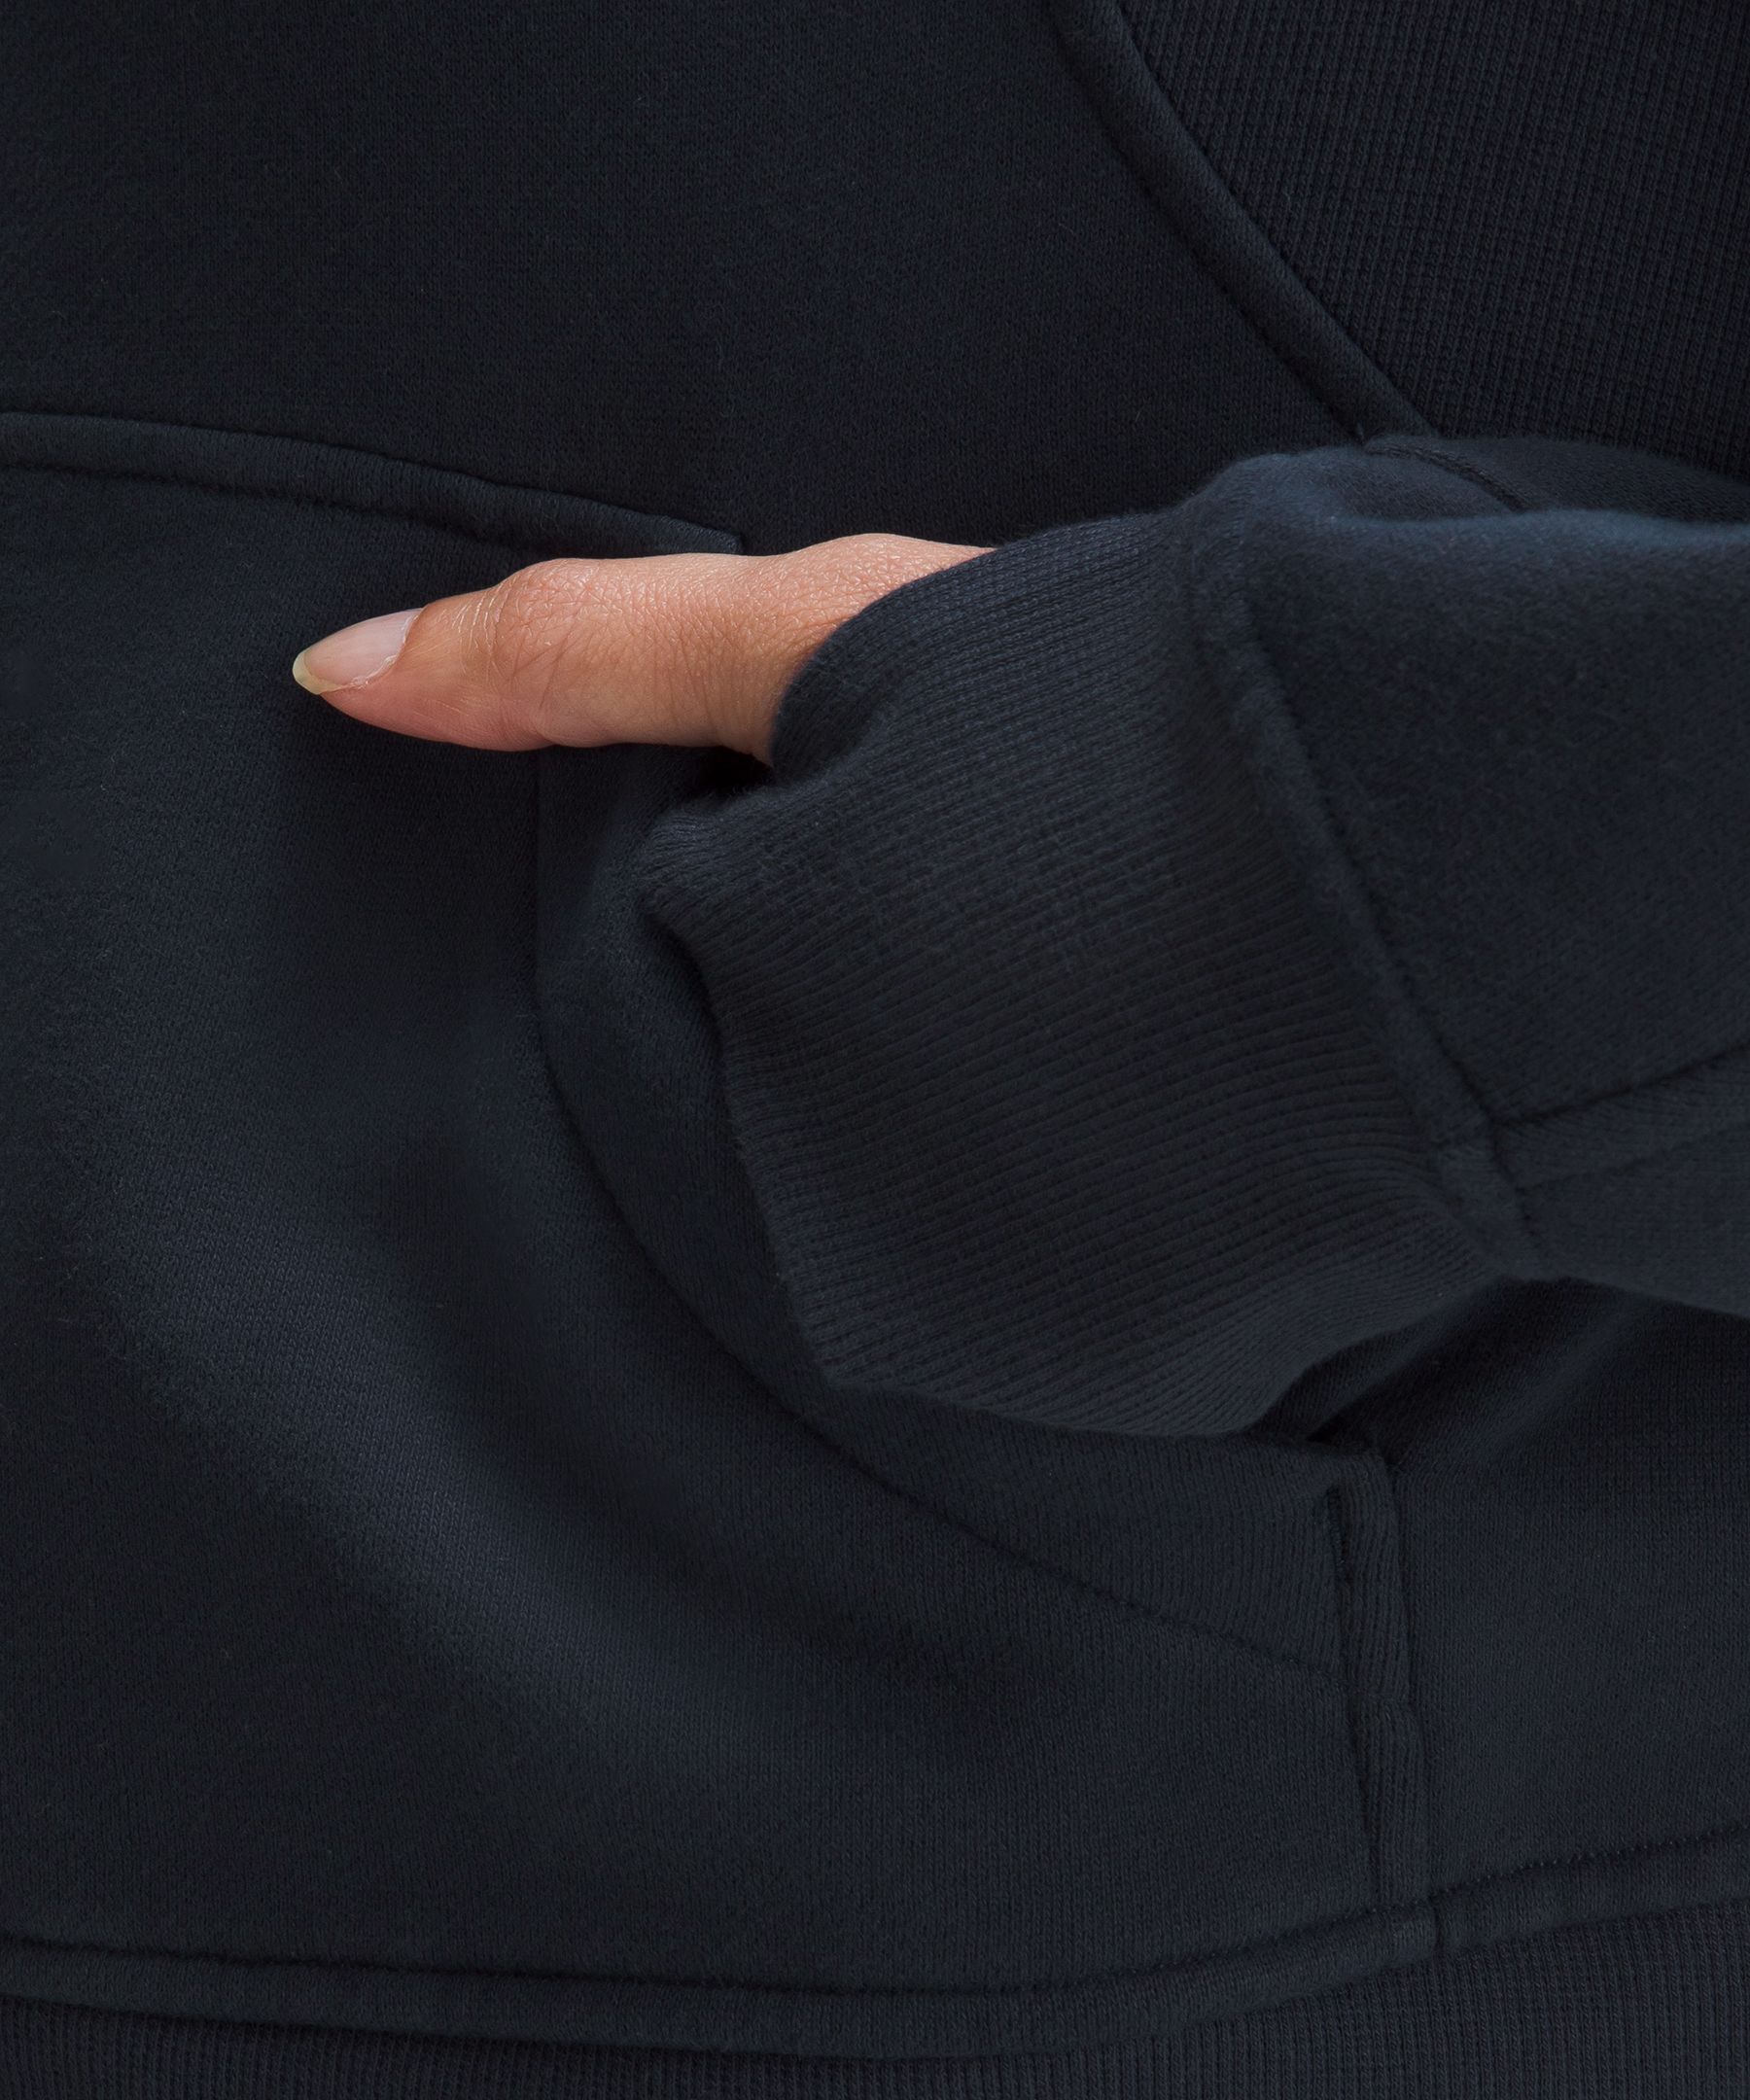 Scuba Oversized Full-Zip Hoodie  Women's Hoodies & Sweatshirts